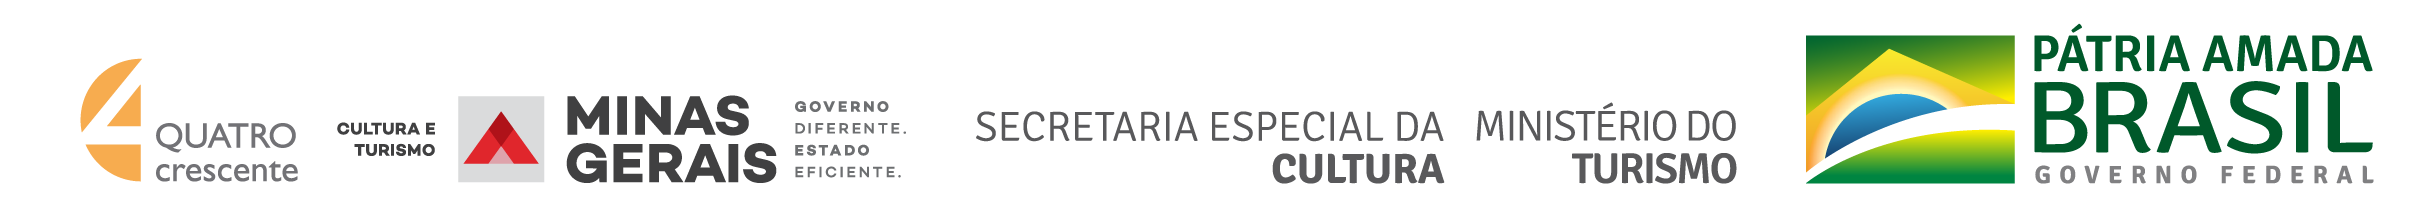 Logoas da empresas: Quatro Crescente, Governo de Minas Gerais, Secretaria Especial da Cultura, Ministério do Turismo e Governo Federal